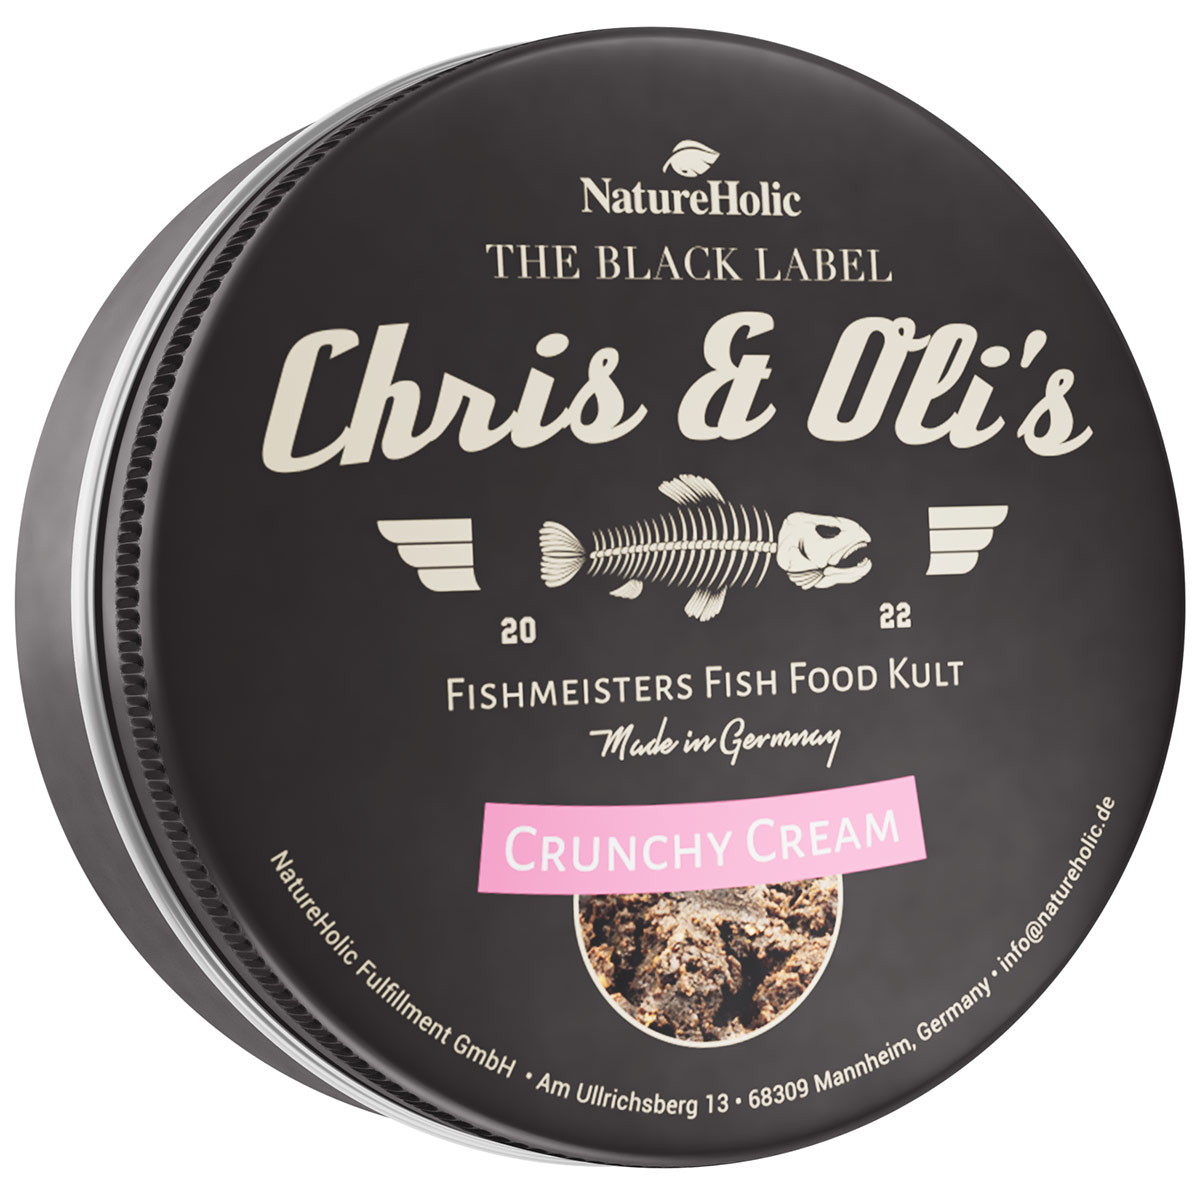 Chris und Olis Crunchy Cream 100g von NatureHolic